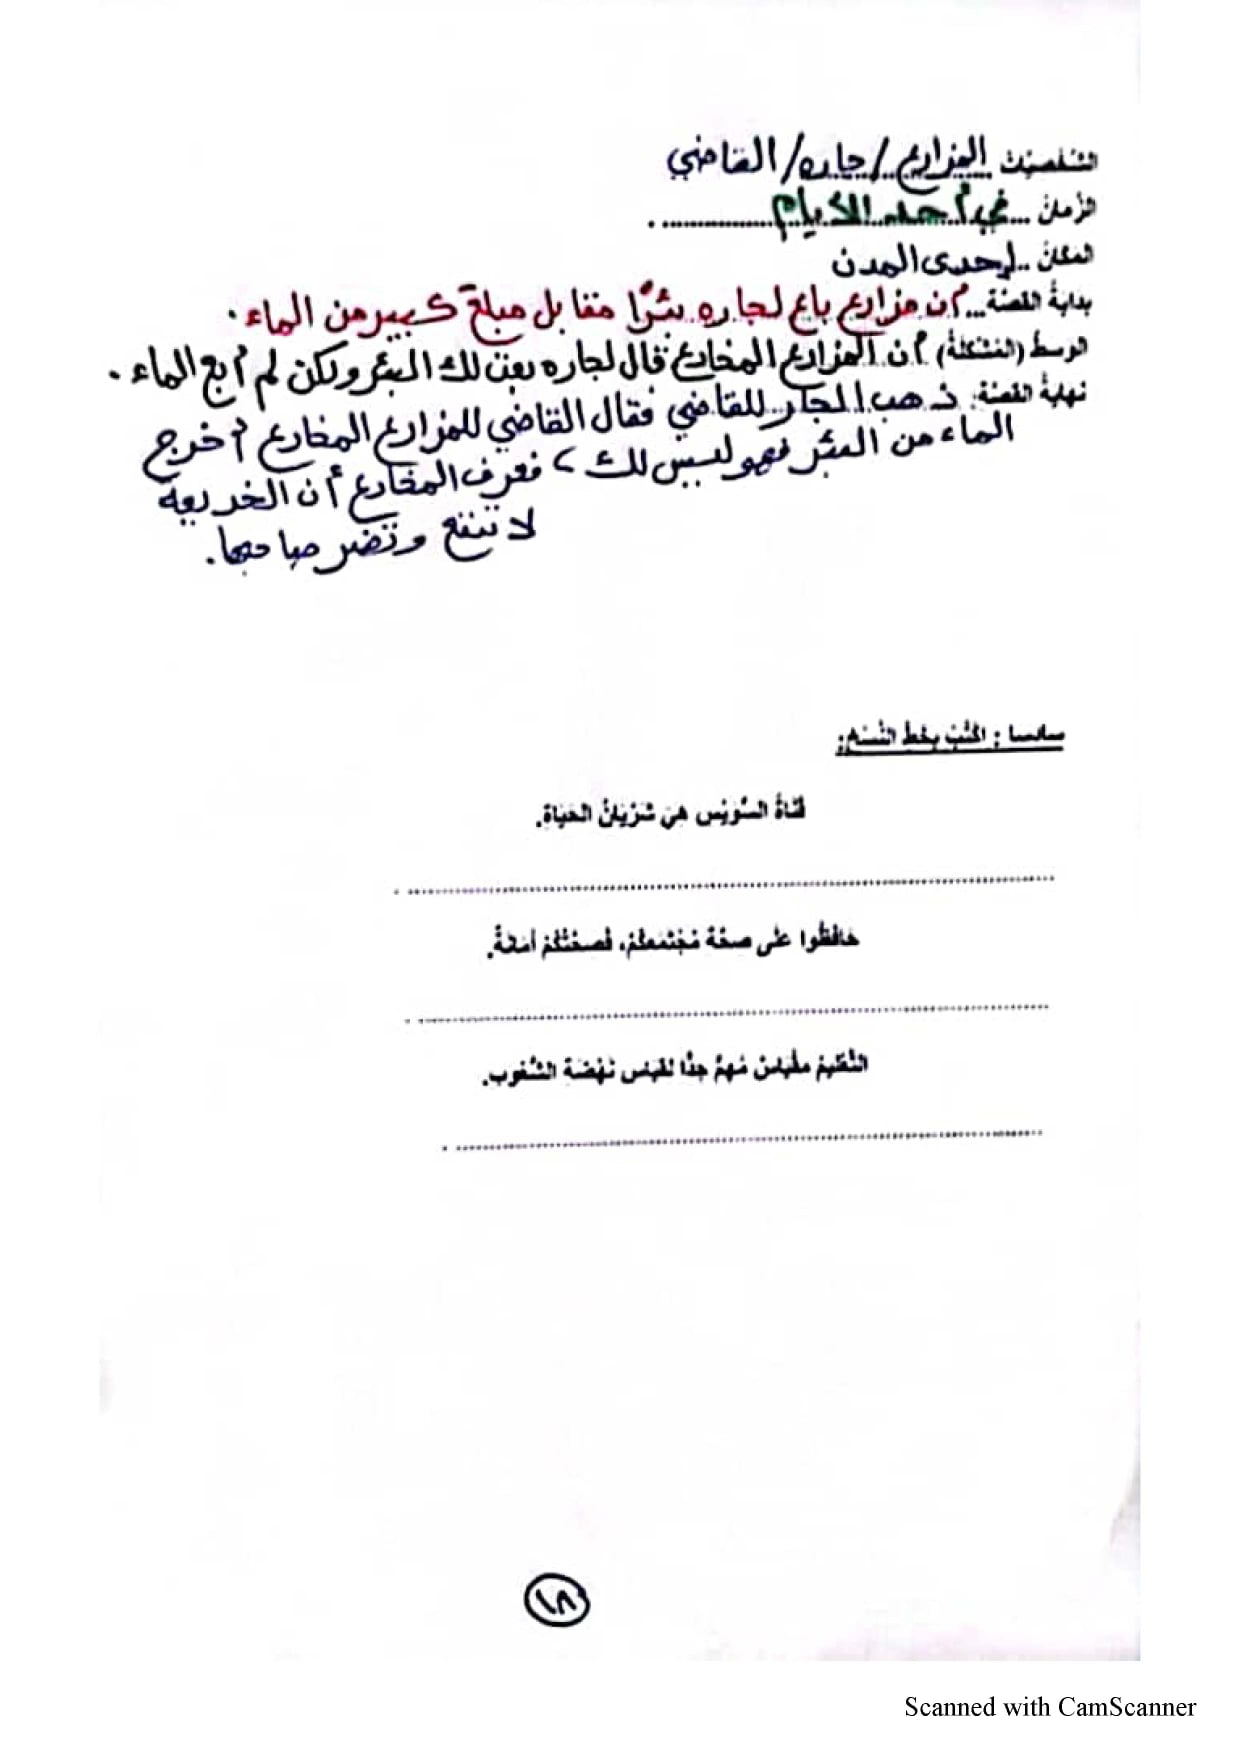 مراجعة ليلة الامتحان للصف الرابع الإبتدائي من نماذج الوزارة في اللغة العربية الترم الثاني 2022 20